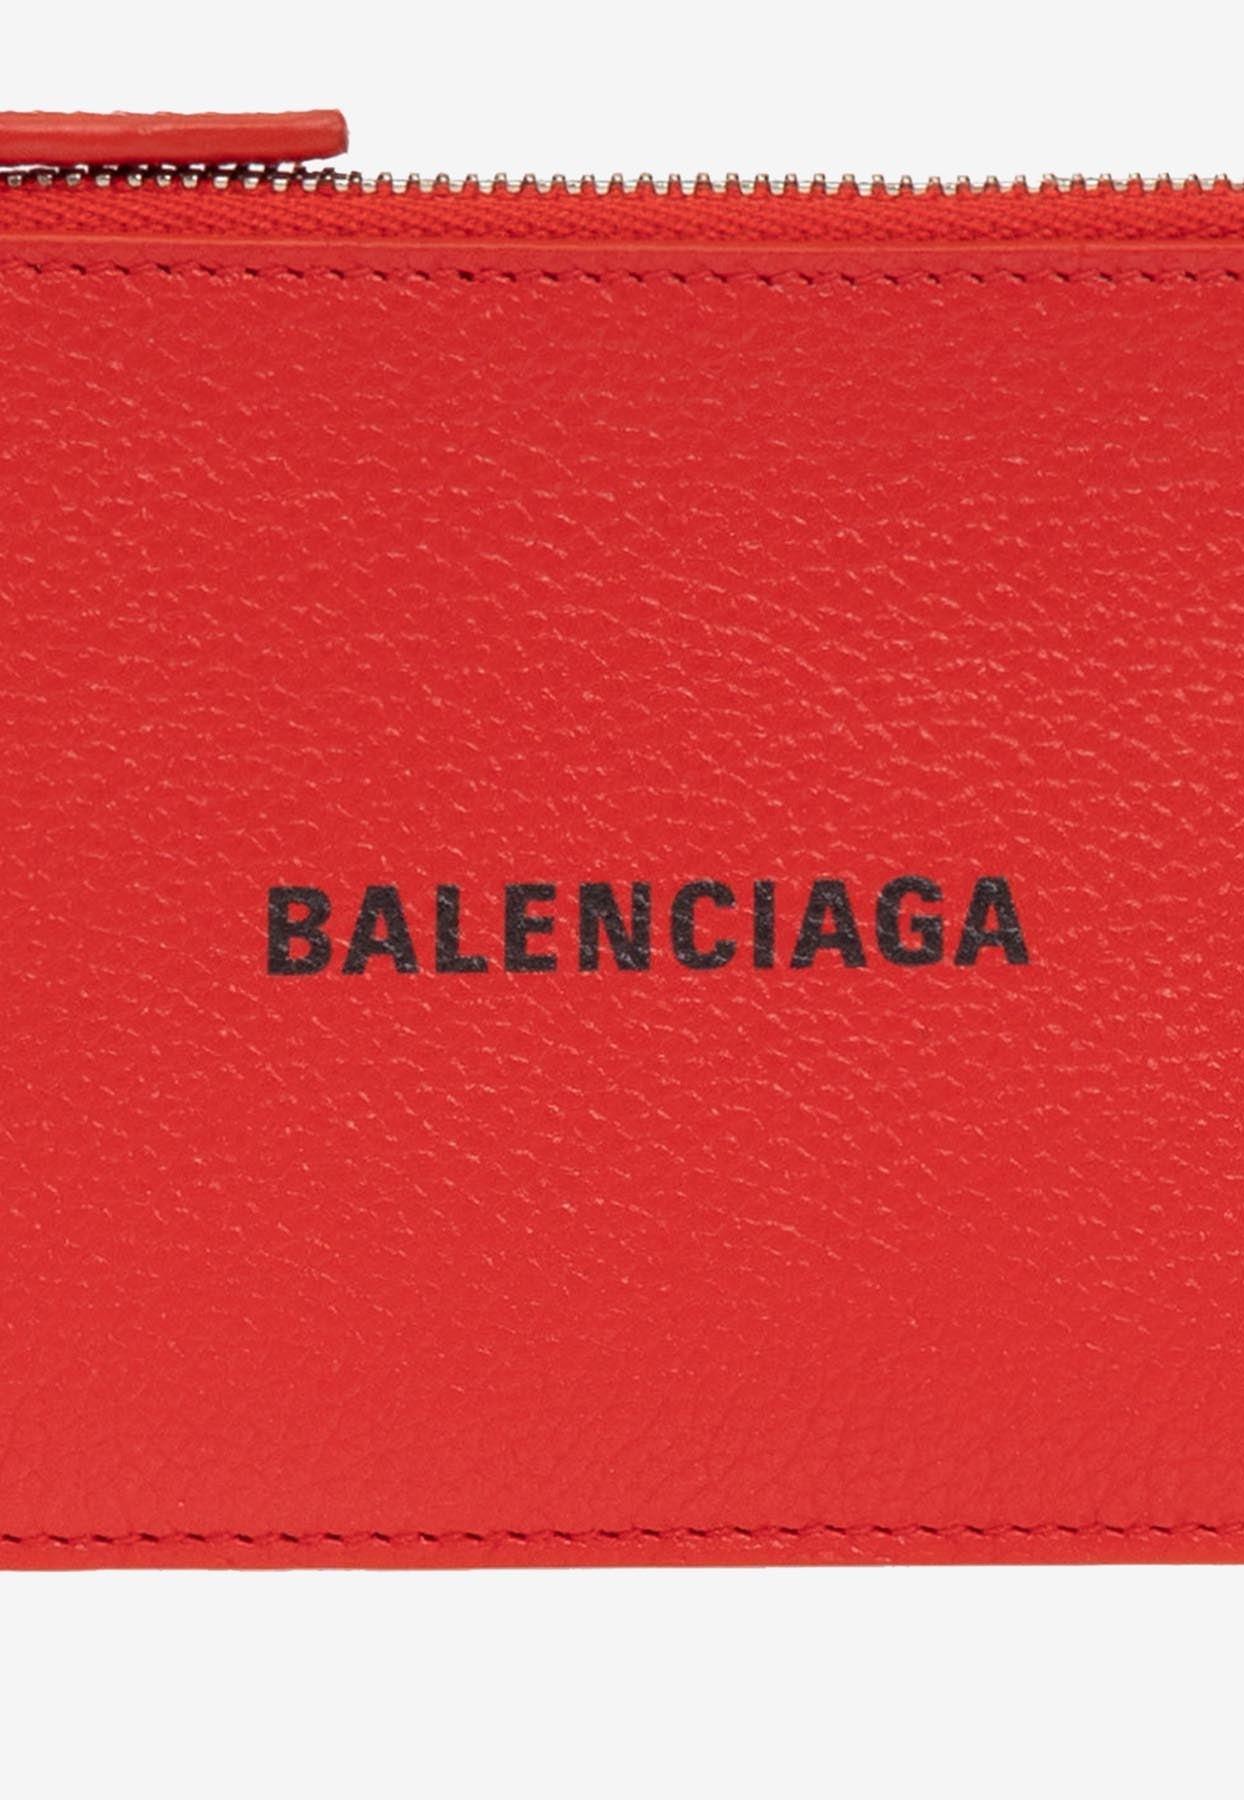 BALENCIAGA Logo-Print Full-Grain Leather Cardholder for Men